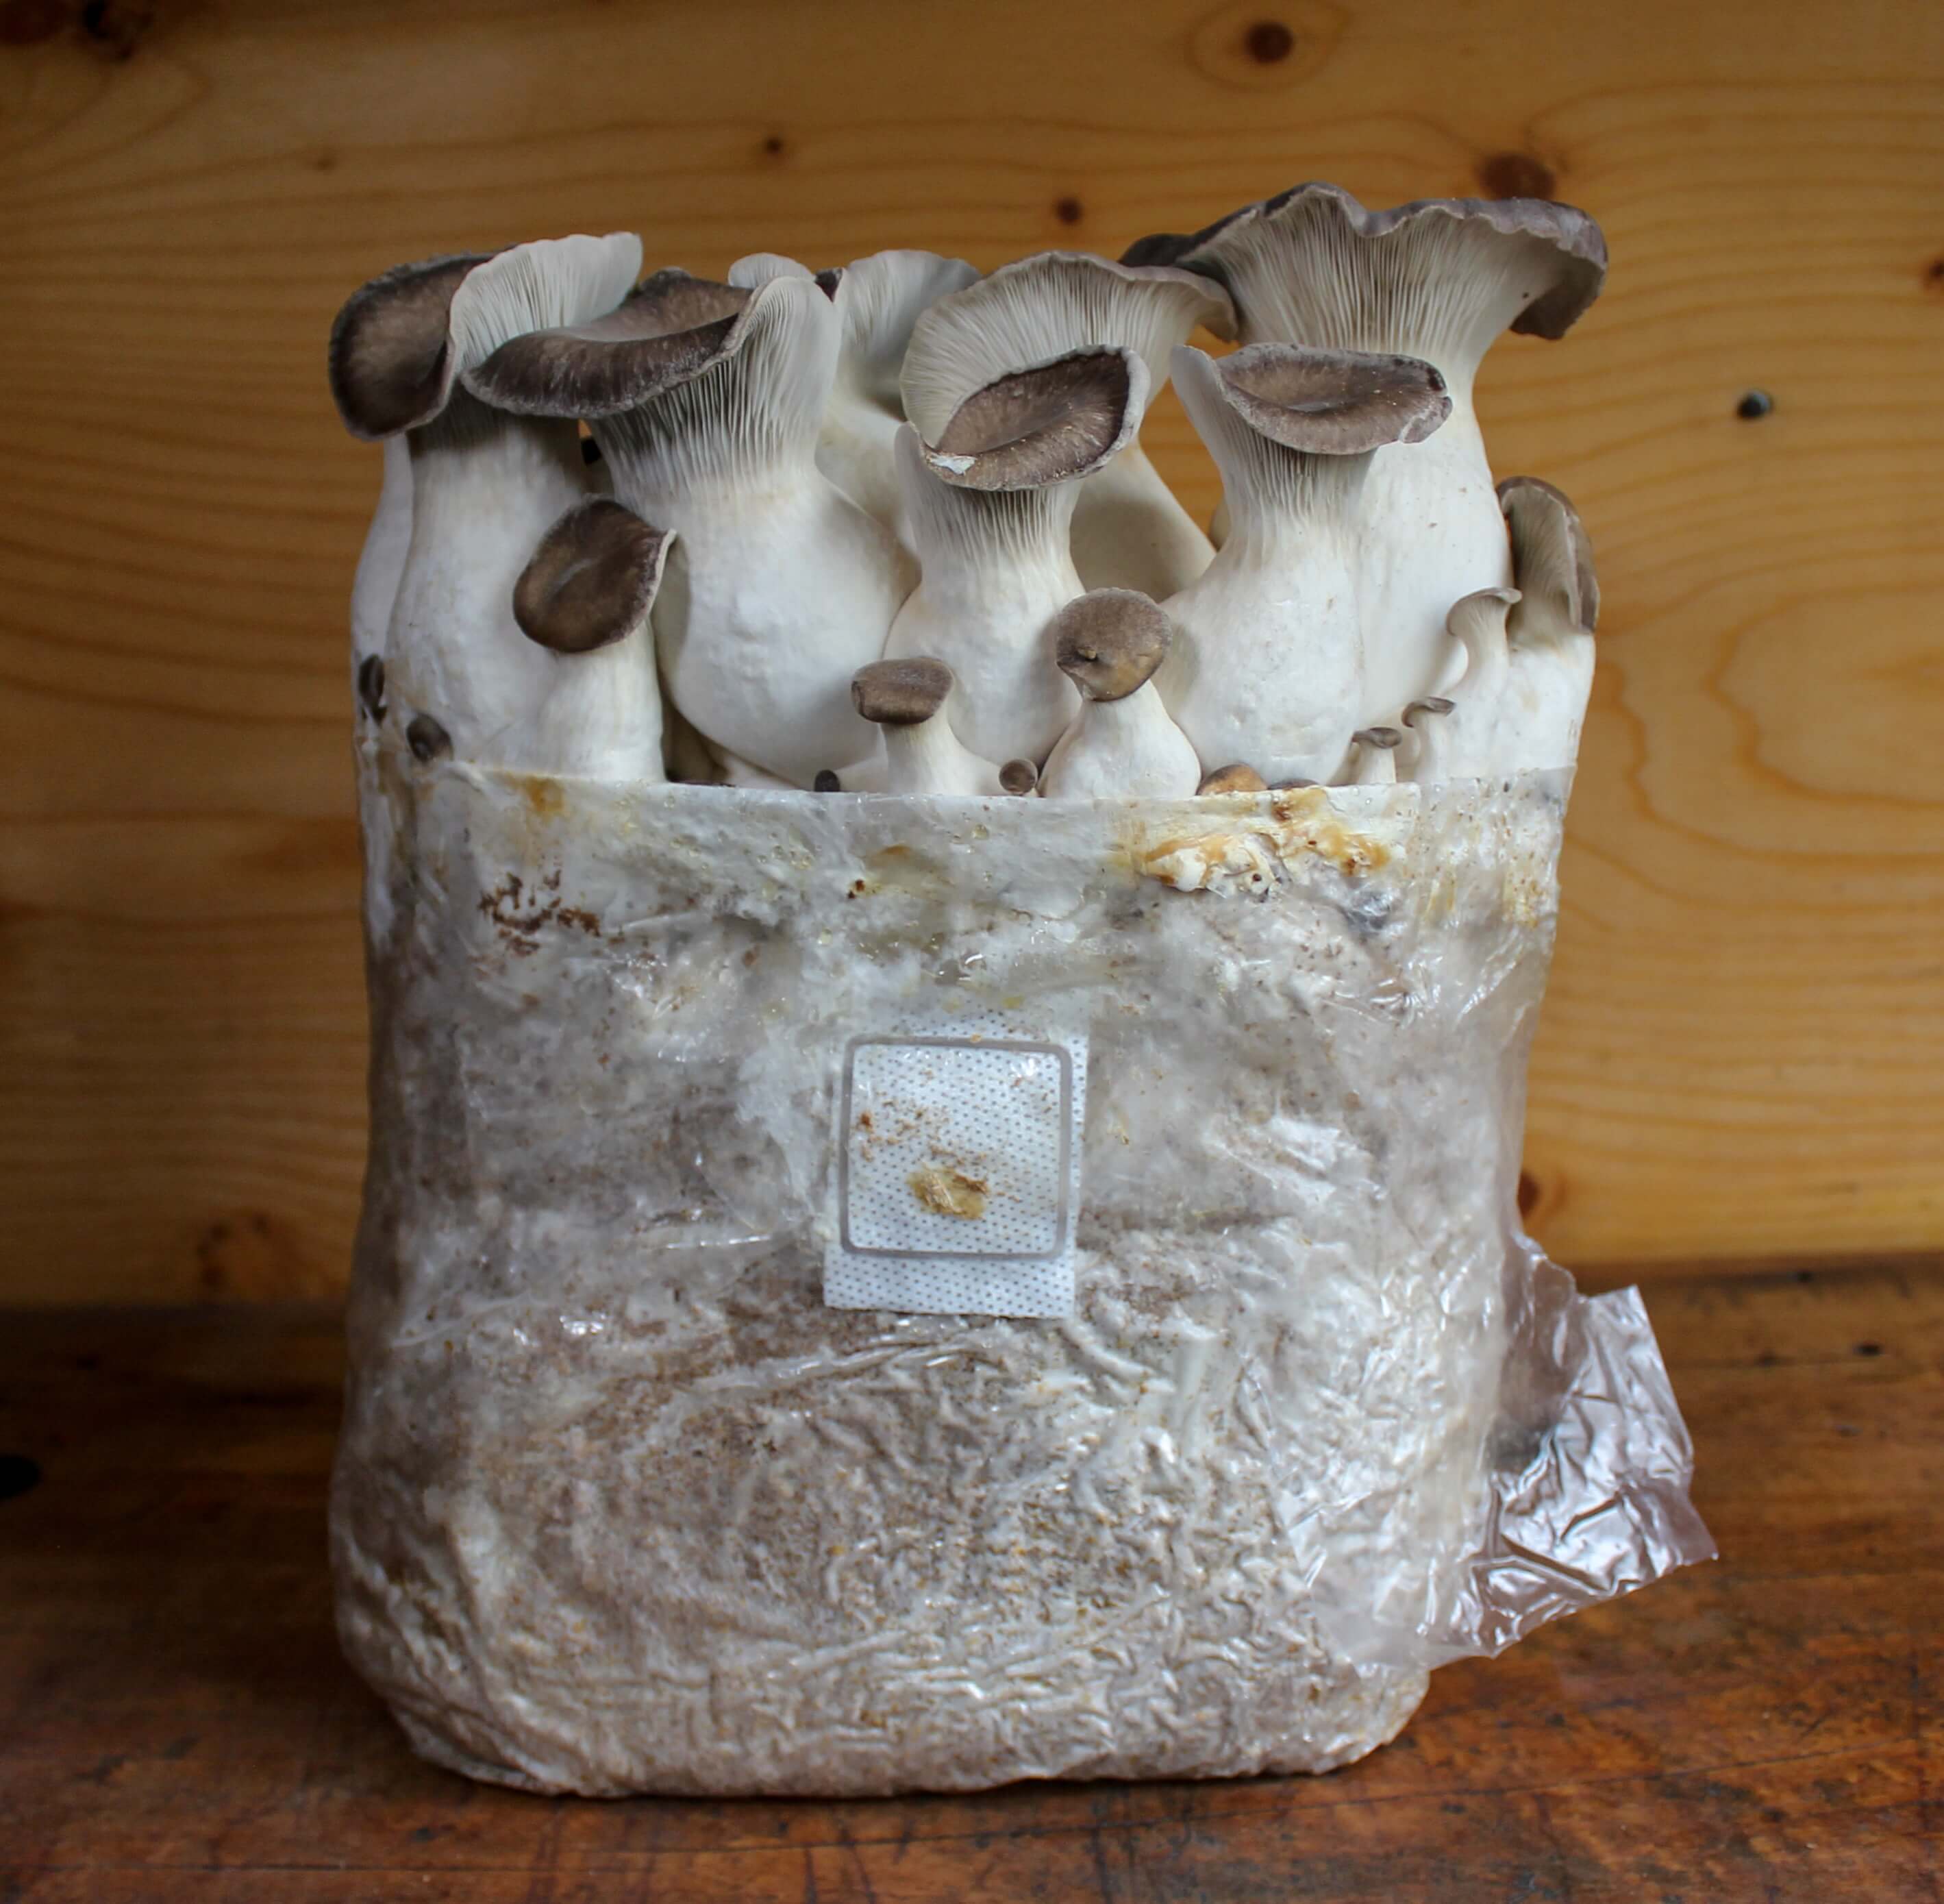 Lion's Mane « Mushroom Growing Kit – Les 400 Pieds de Champignon